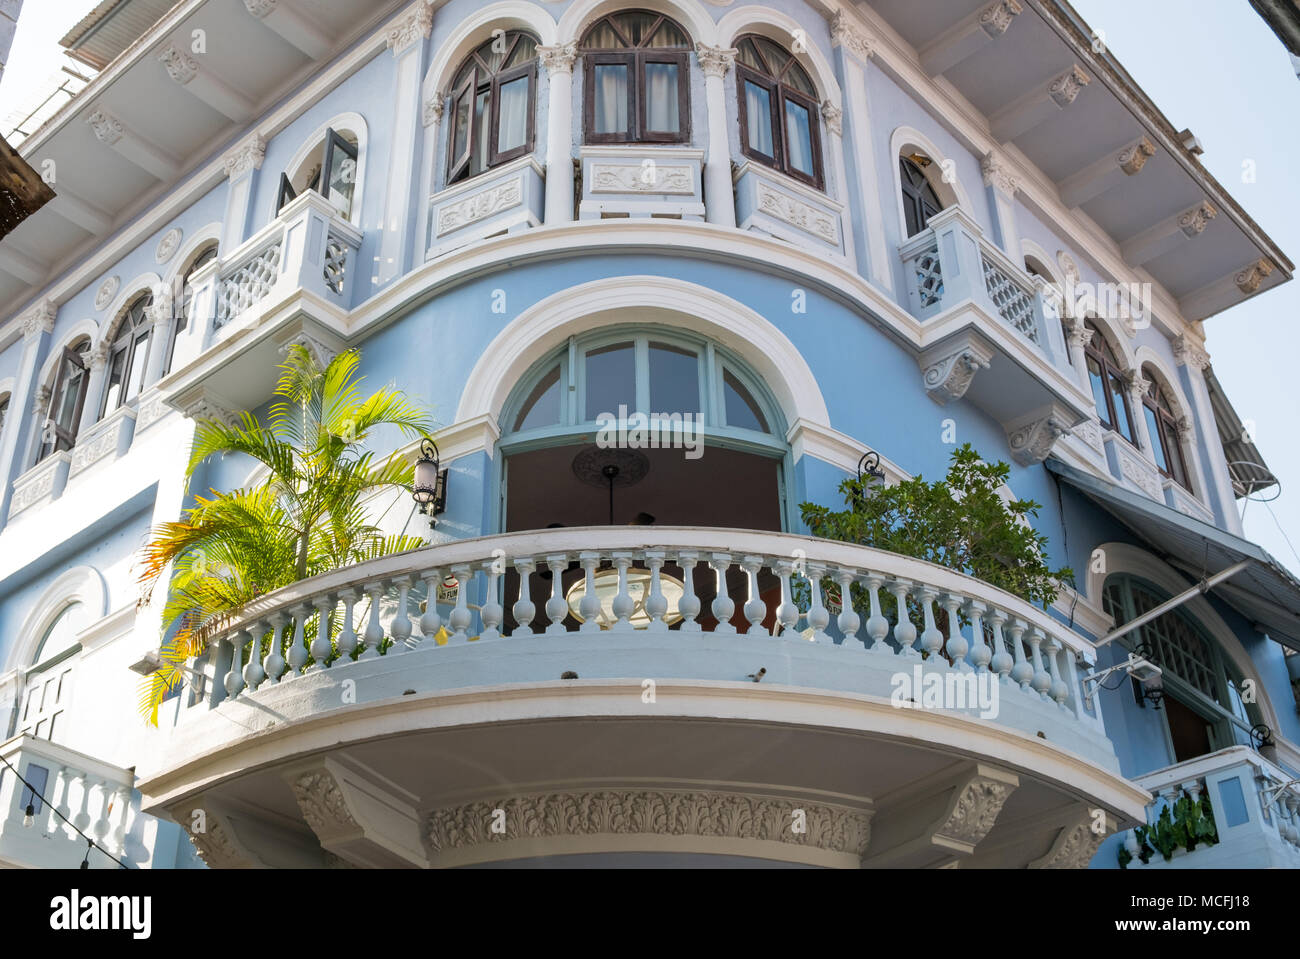 Balcon sur façade extérieur de bâtiment historique, dans la vieille ville - Casco Viejo, Panama City Banque D'Images